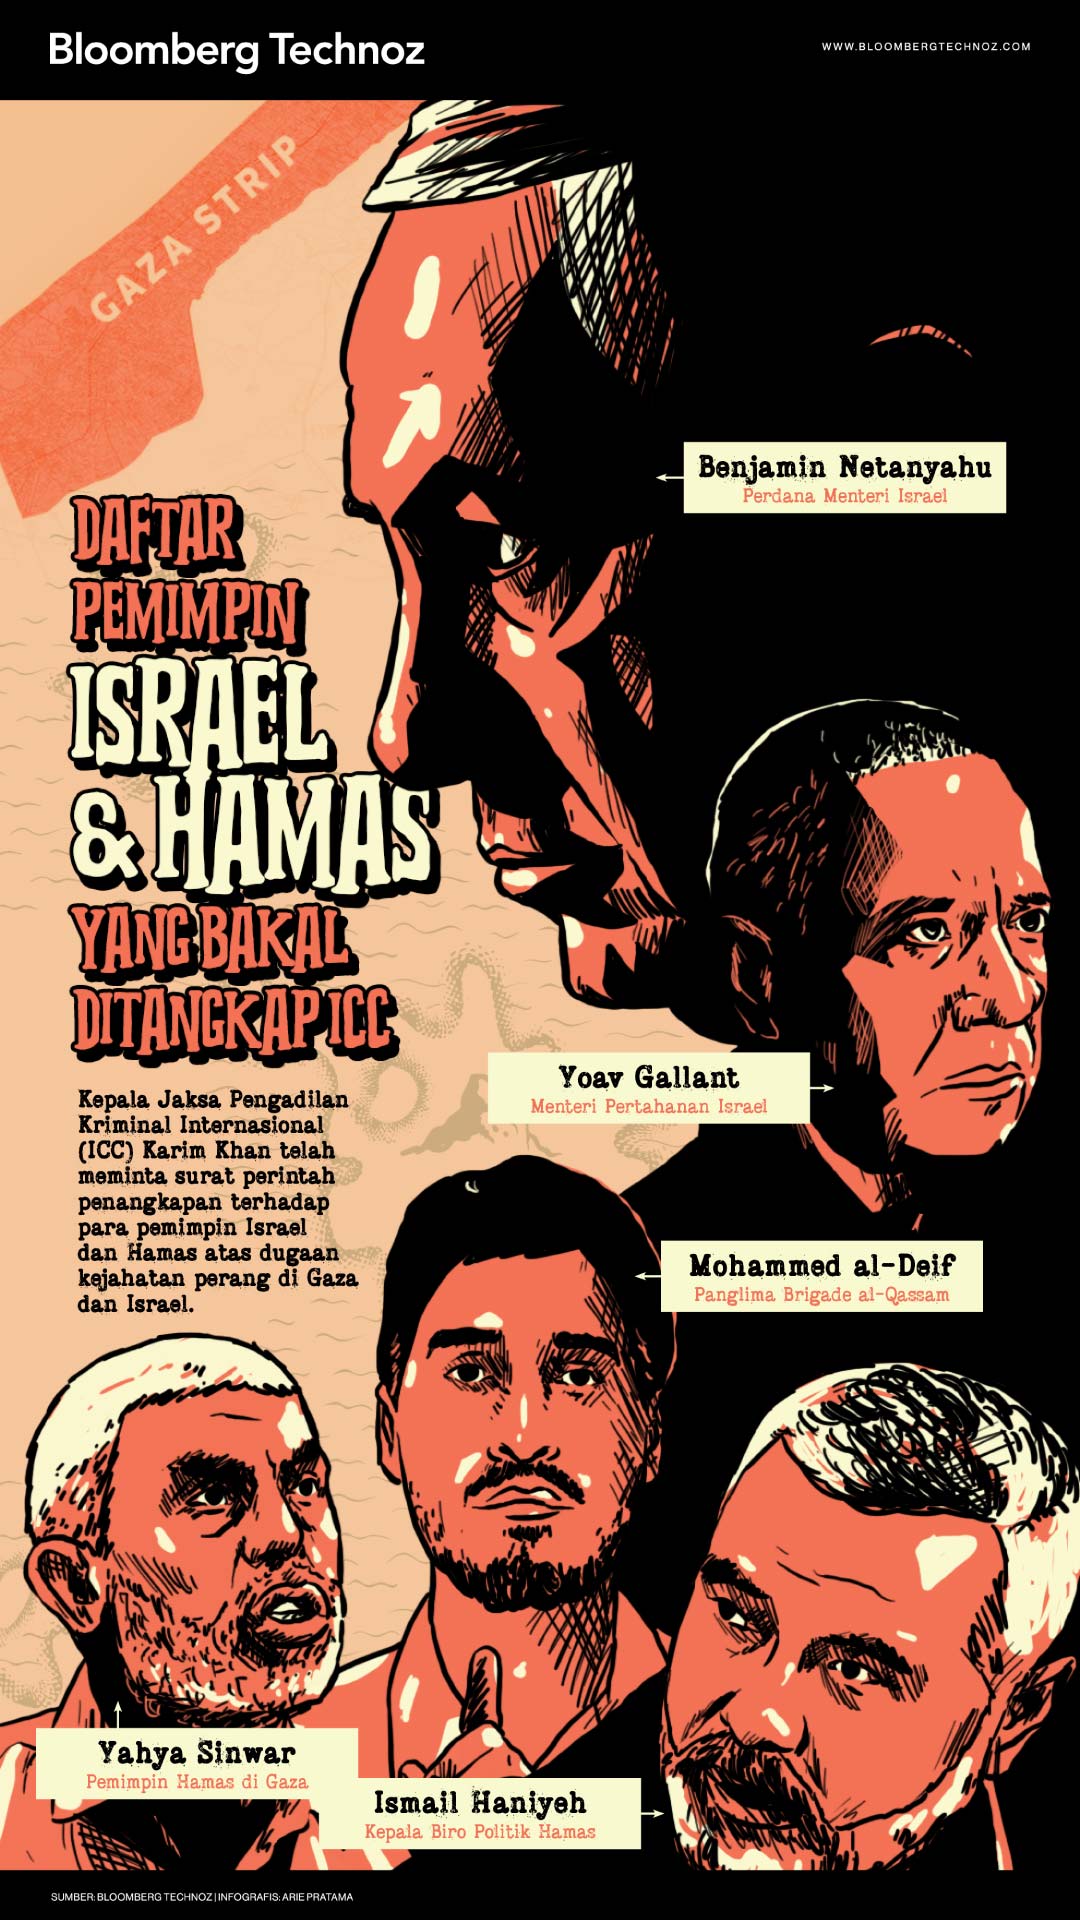 Daftar Pemimpin Israel & Hamas yang Bakal Ditangkap ICC (Bloomberg Technoz/Arie Pratama)